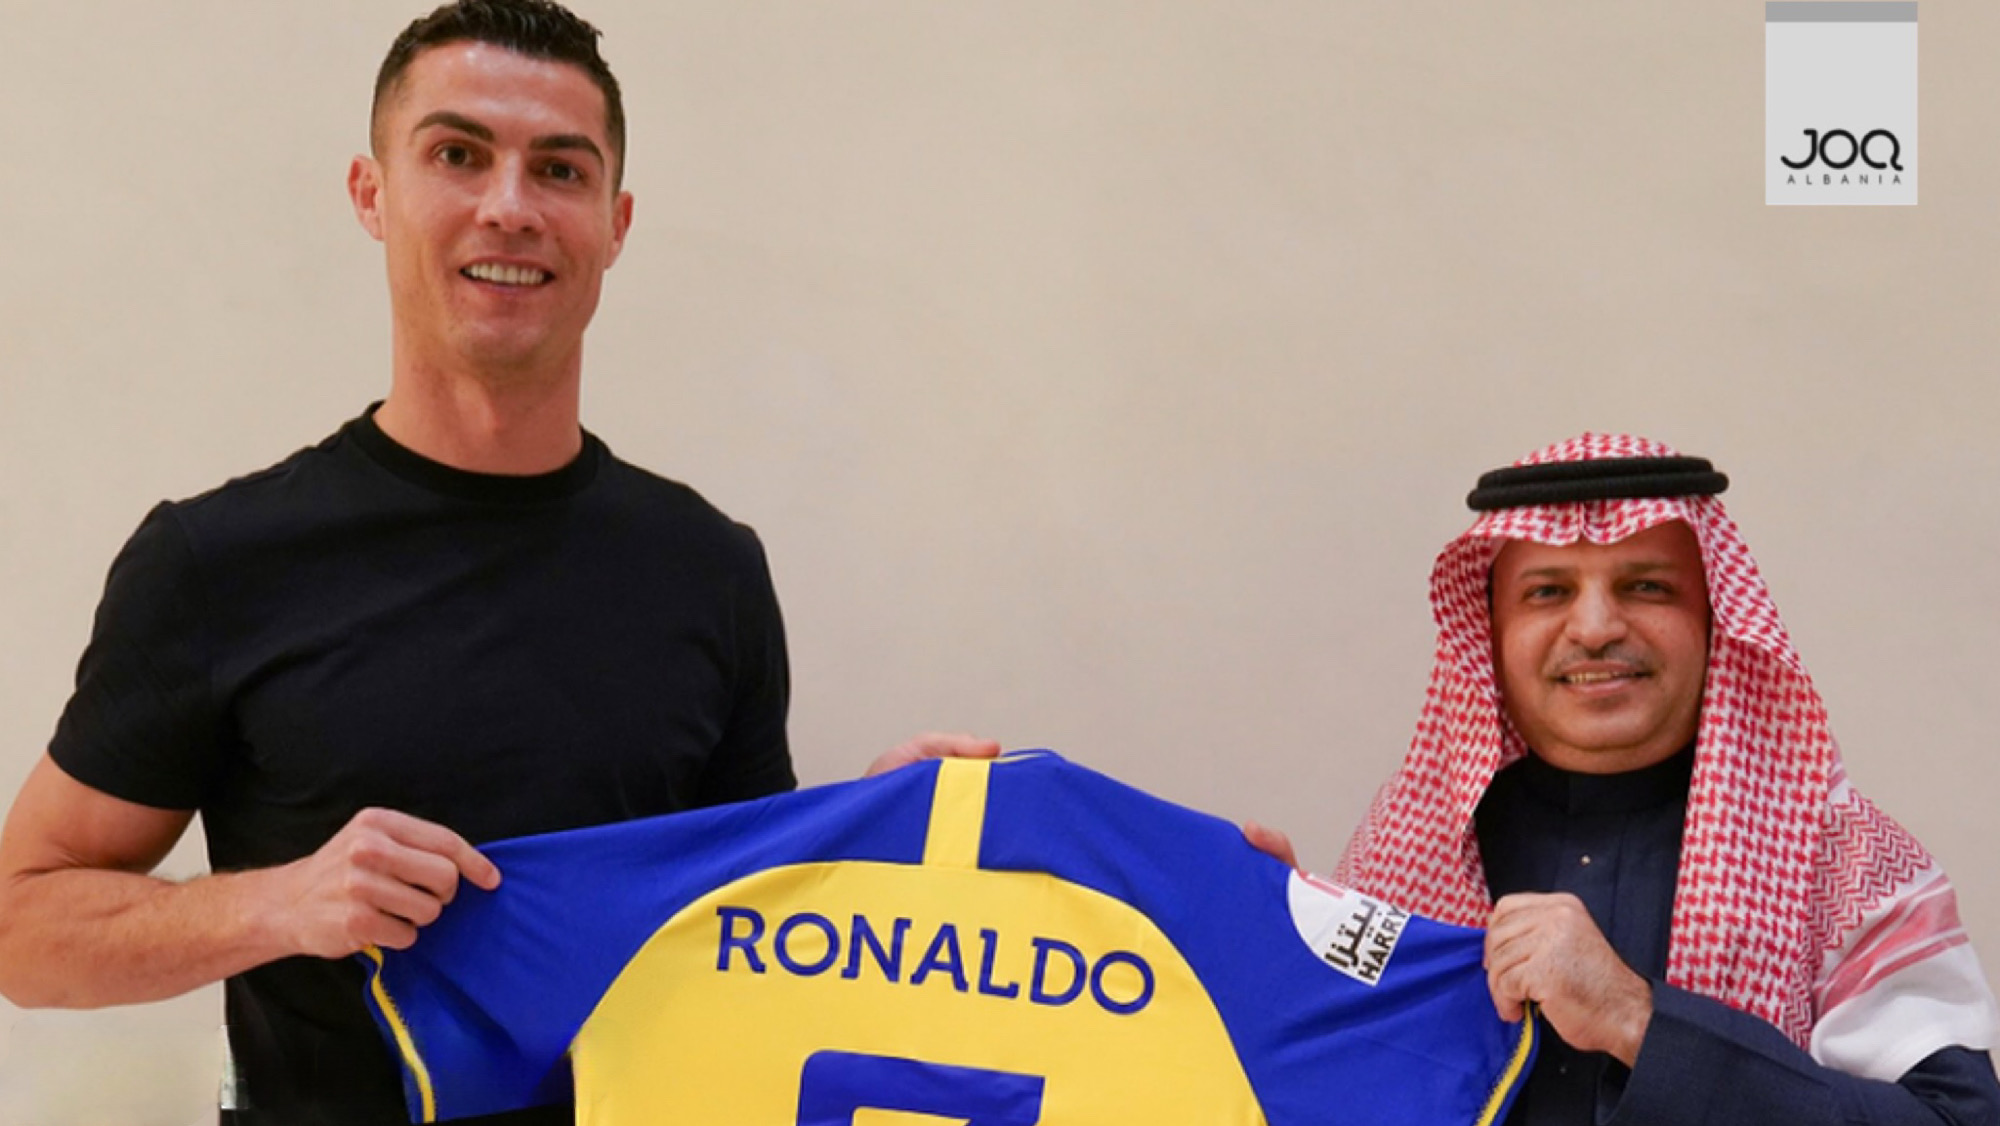 200 MLN € në vit/ Ronaldo: Vizioni i Al Nassr është frymëzues!